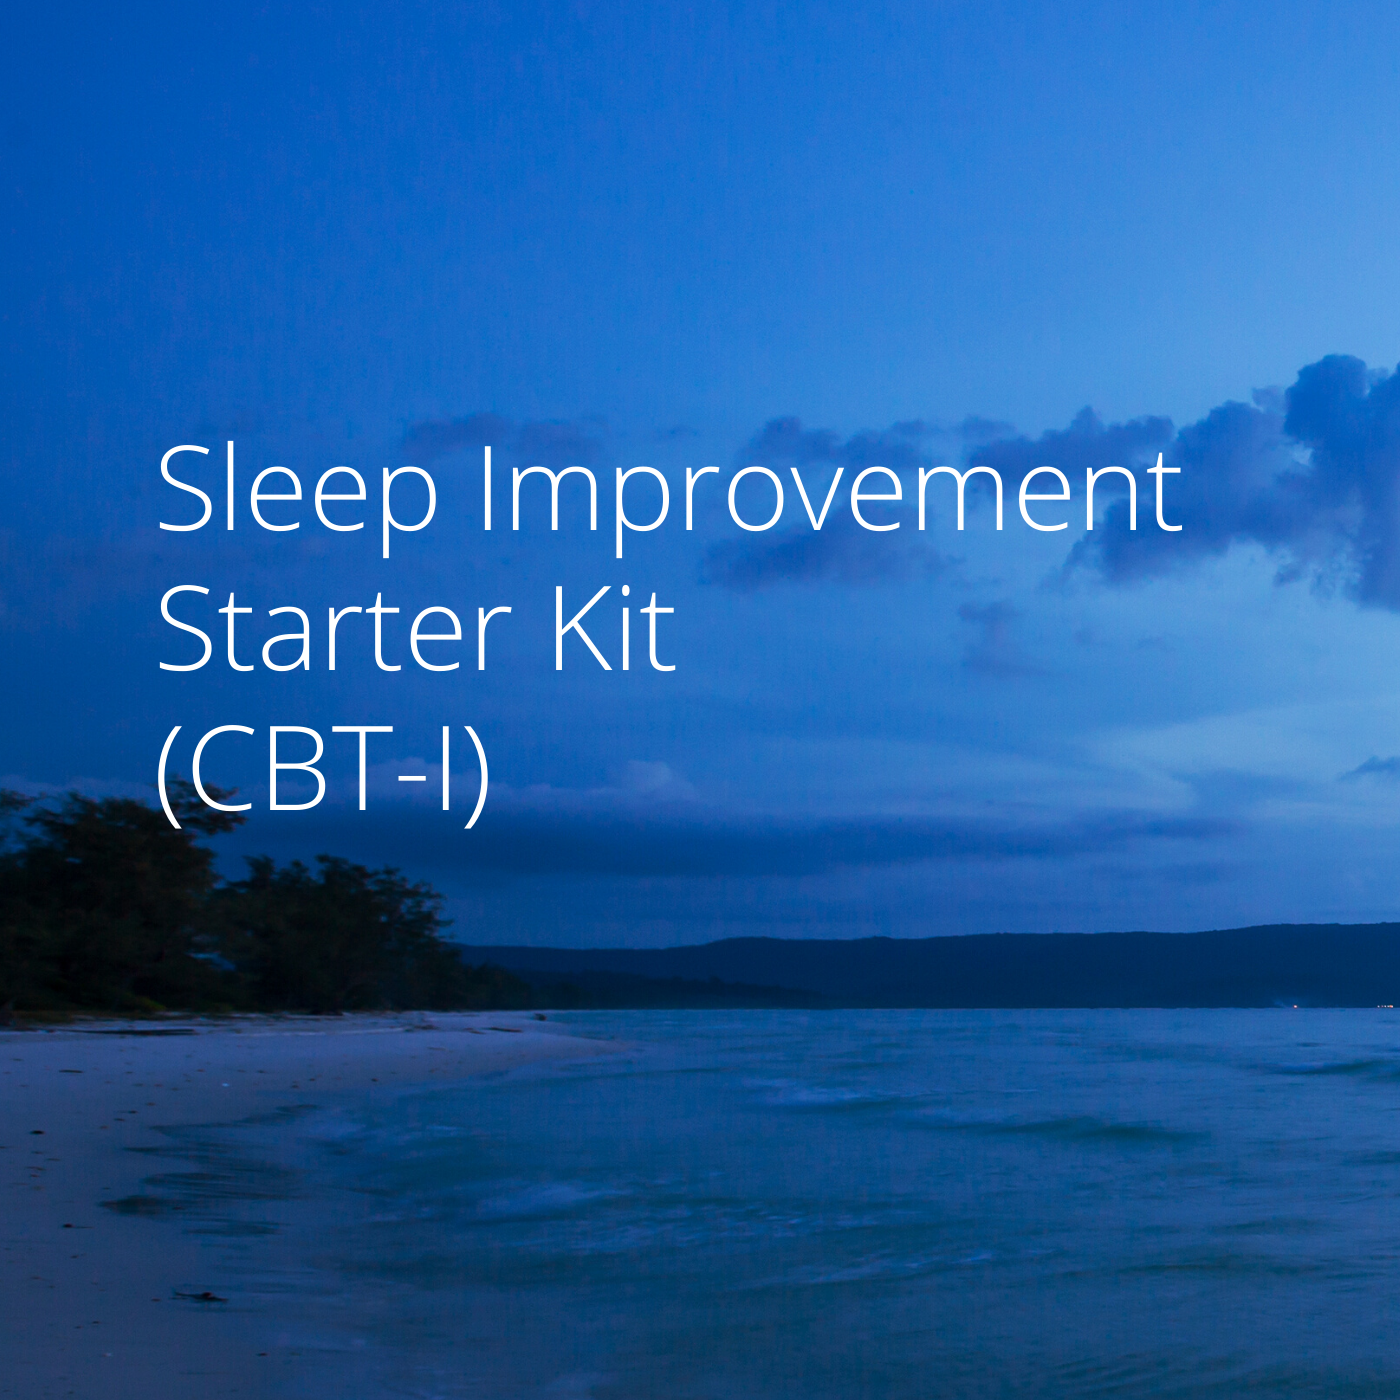 Sleep Improvement Starter Kit (CBT-I)